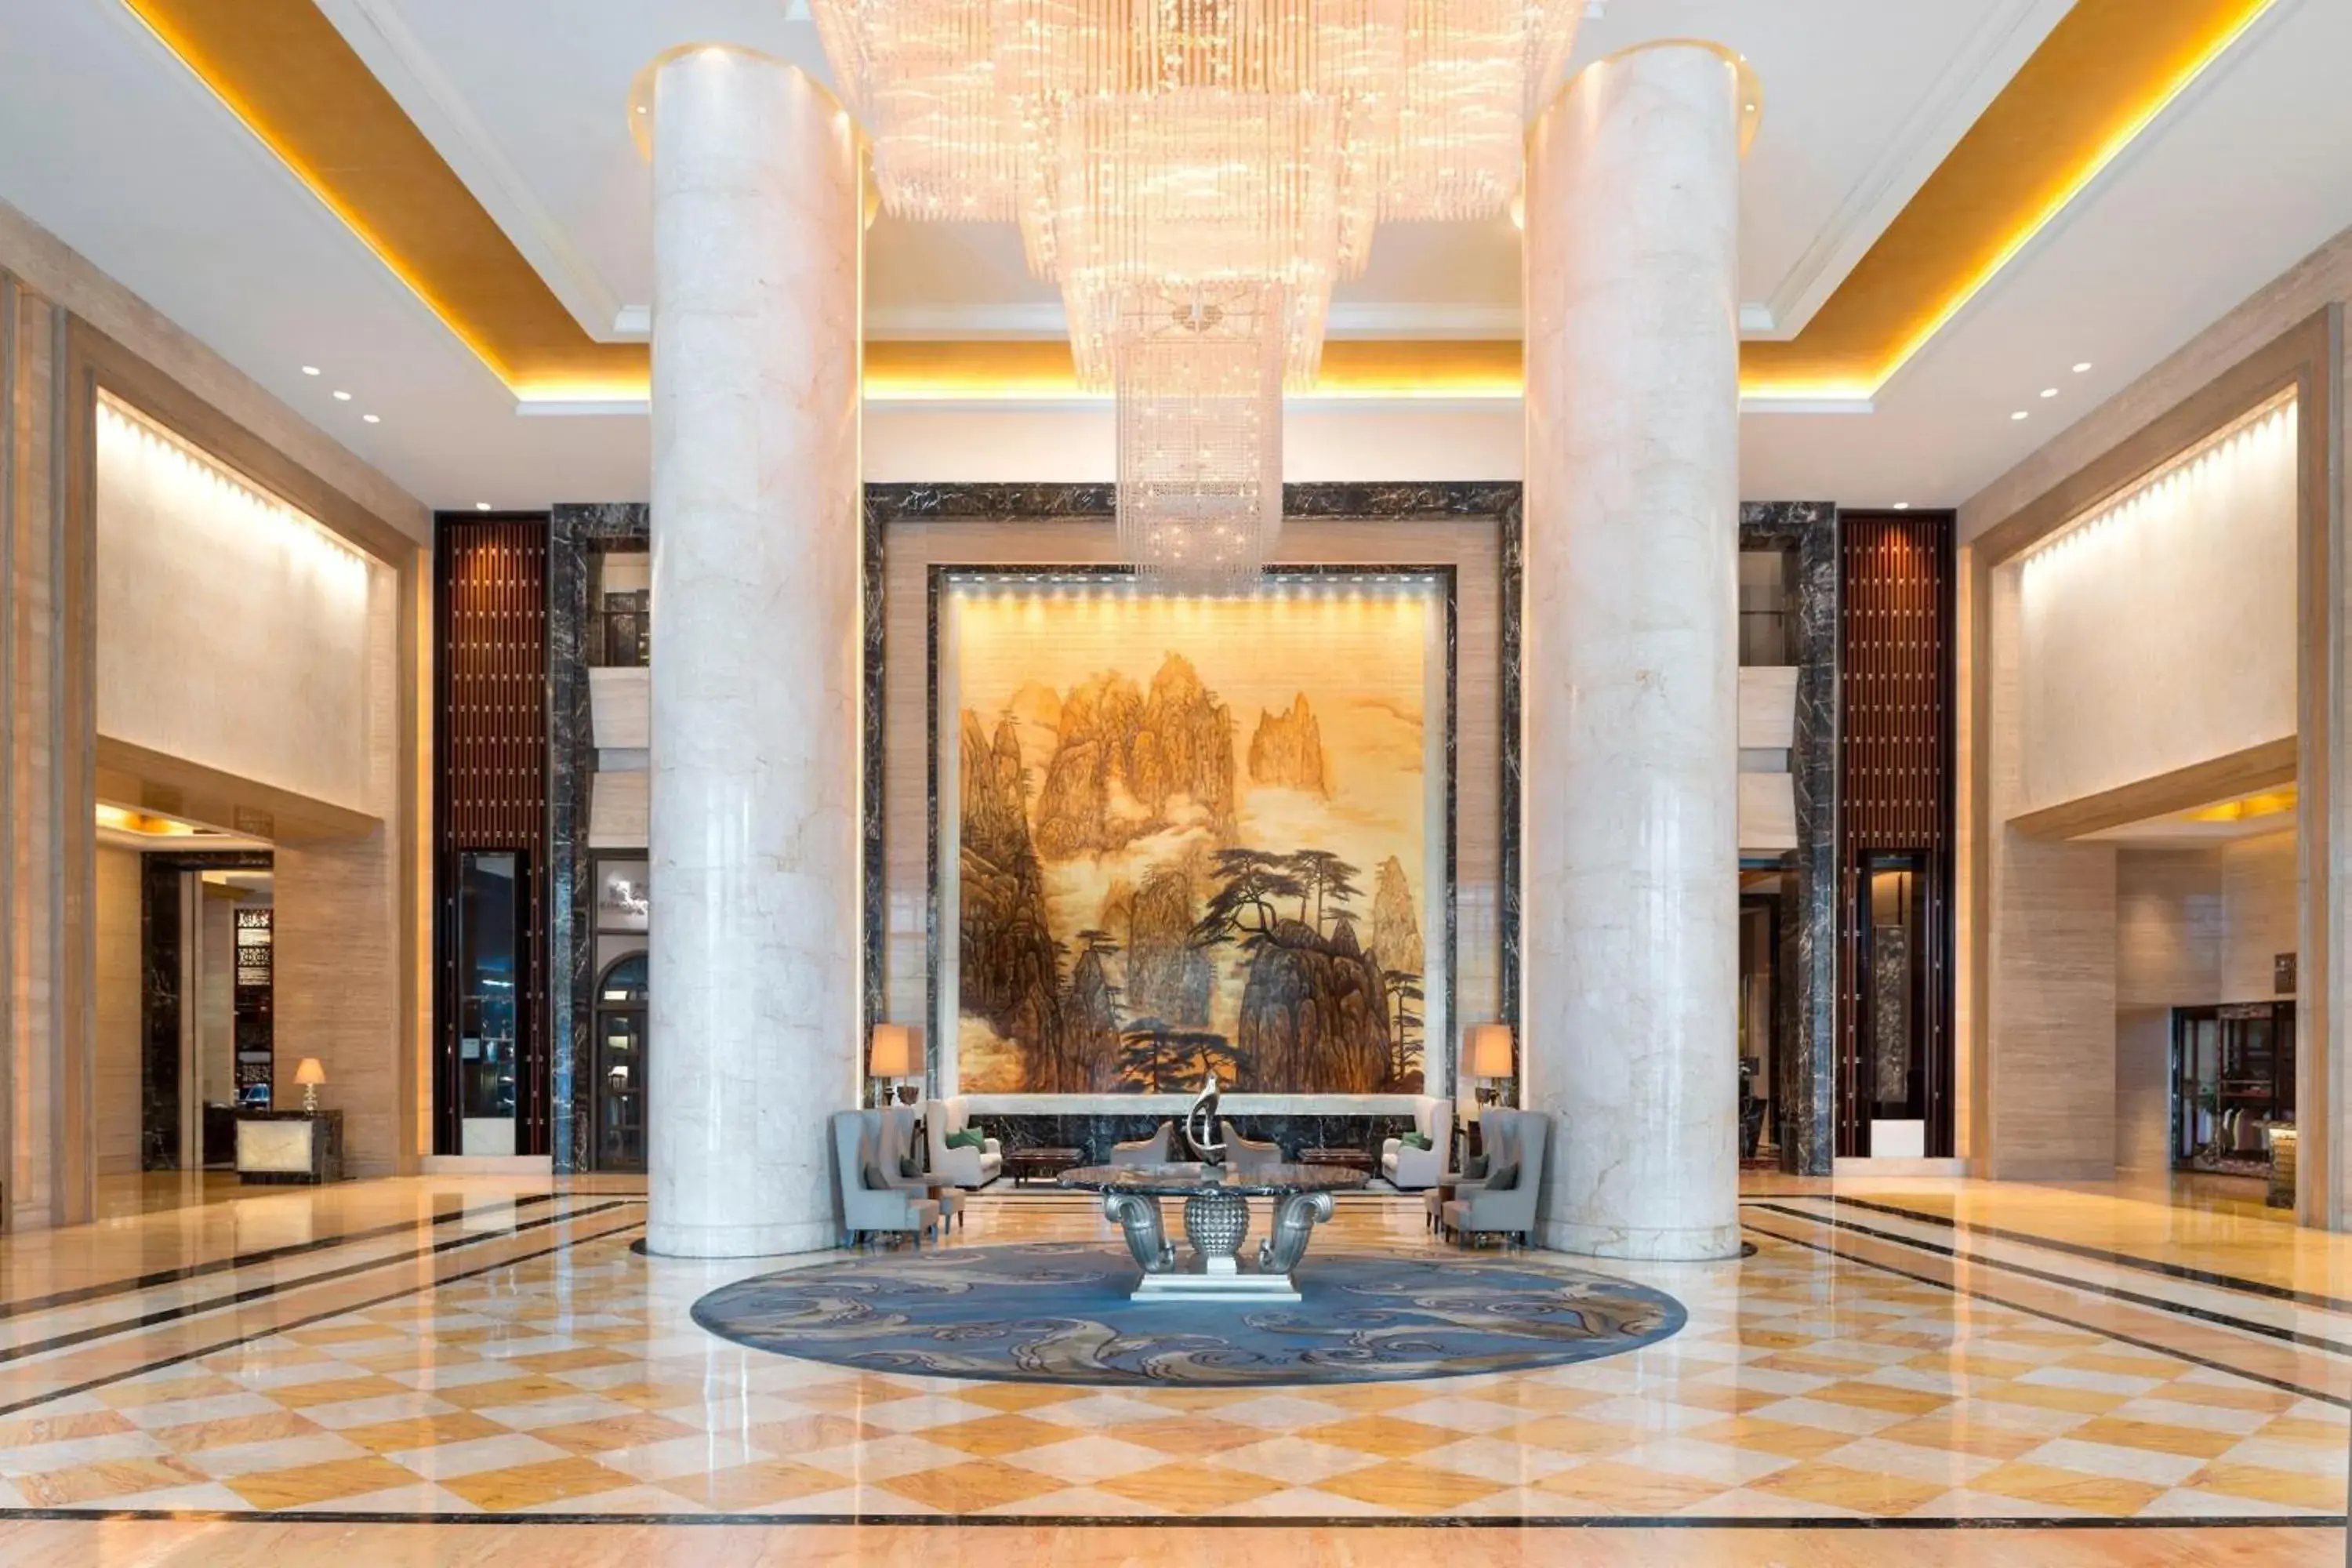 Lobby or reception, Lobby/Reception in The Westin Hefei Baohe